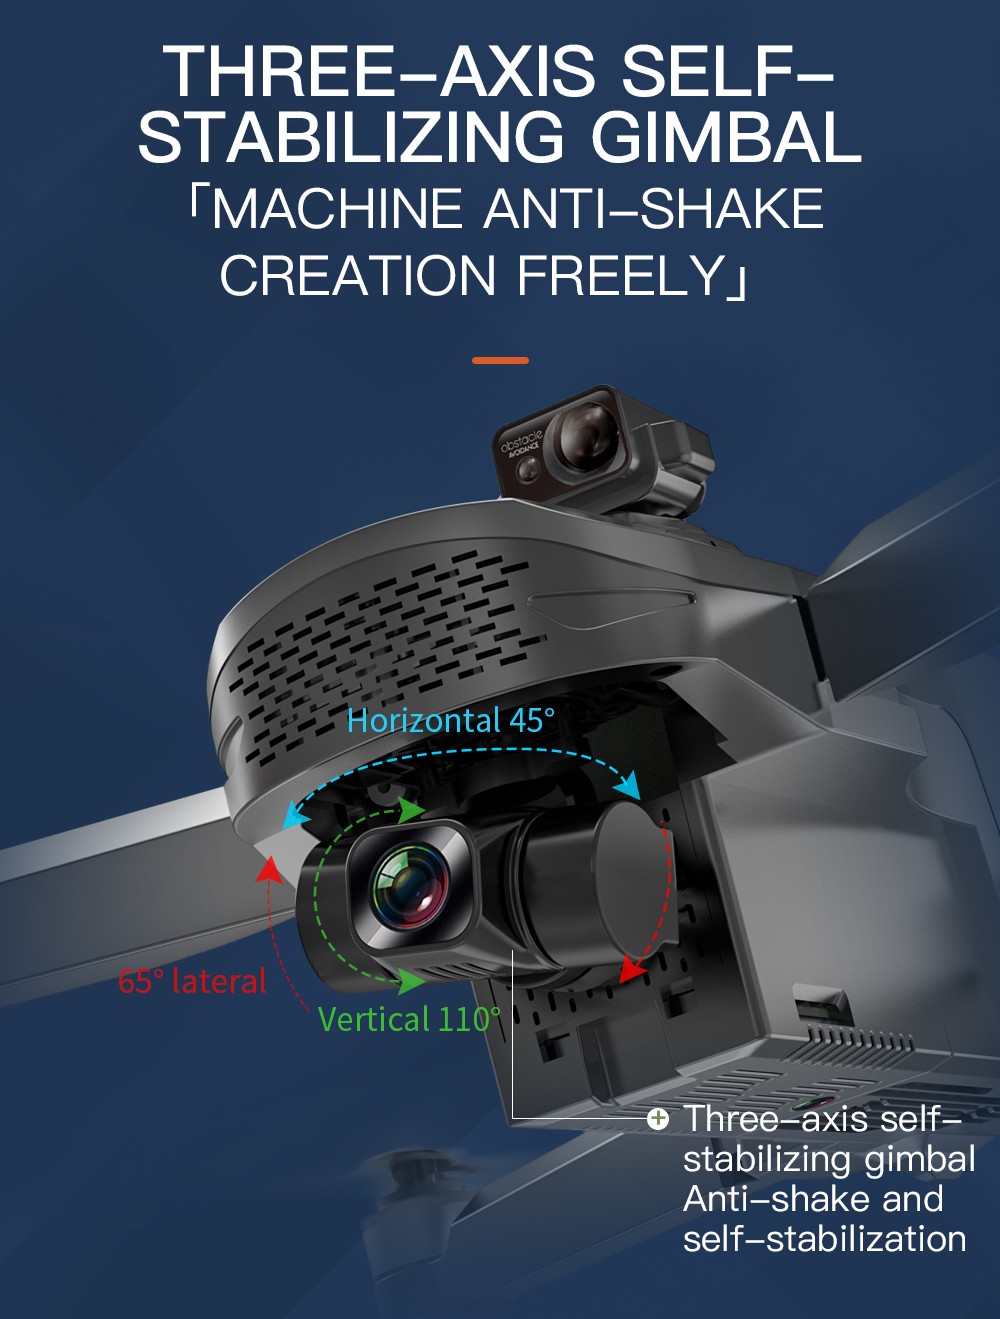 ZLL SG908 MAX 4K 5G WIFI 3KM FPV GPS 3 tengelyes mechanikus kardán 360 fokos akadályelkerülő RC drón – két elem